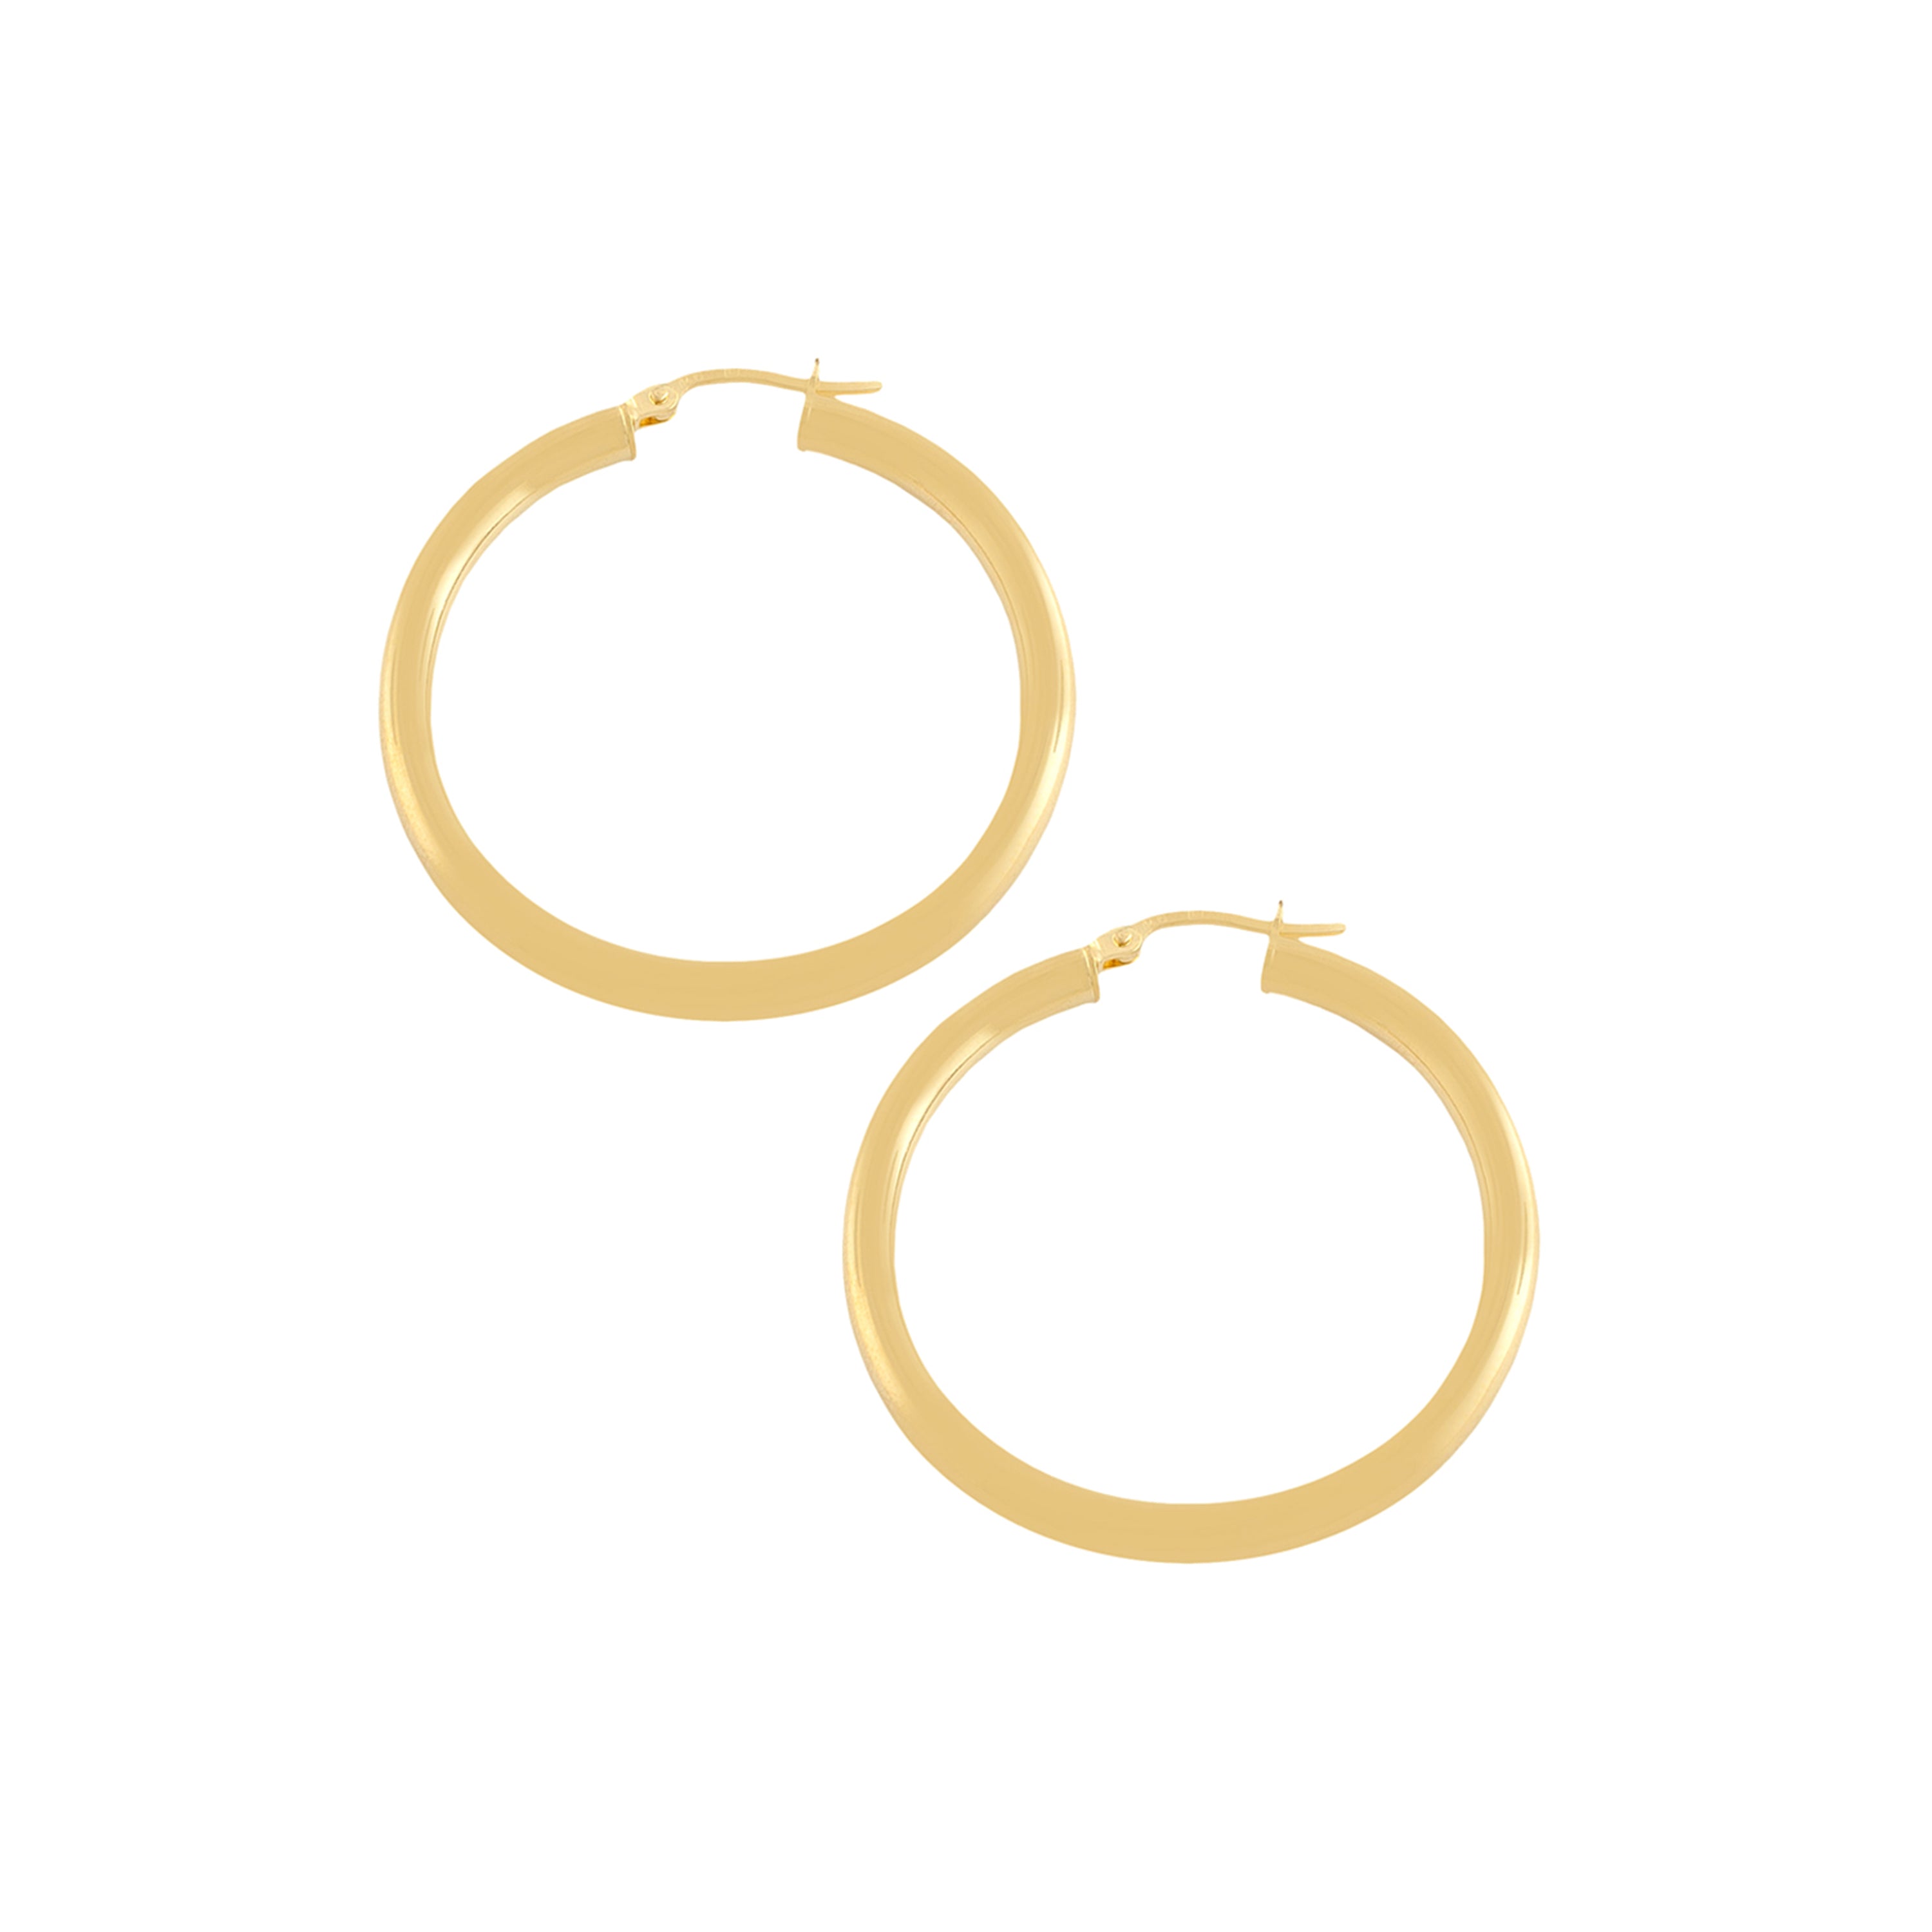 14K Yellow Gold Polished Tube Hoop Earrings